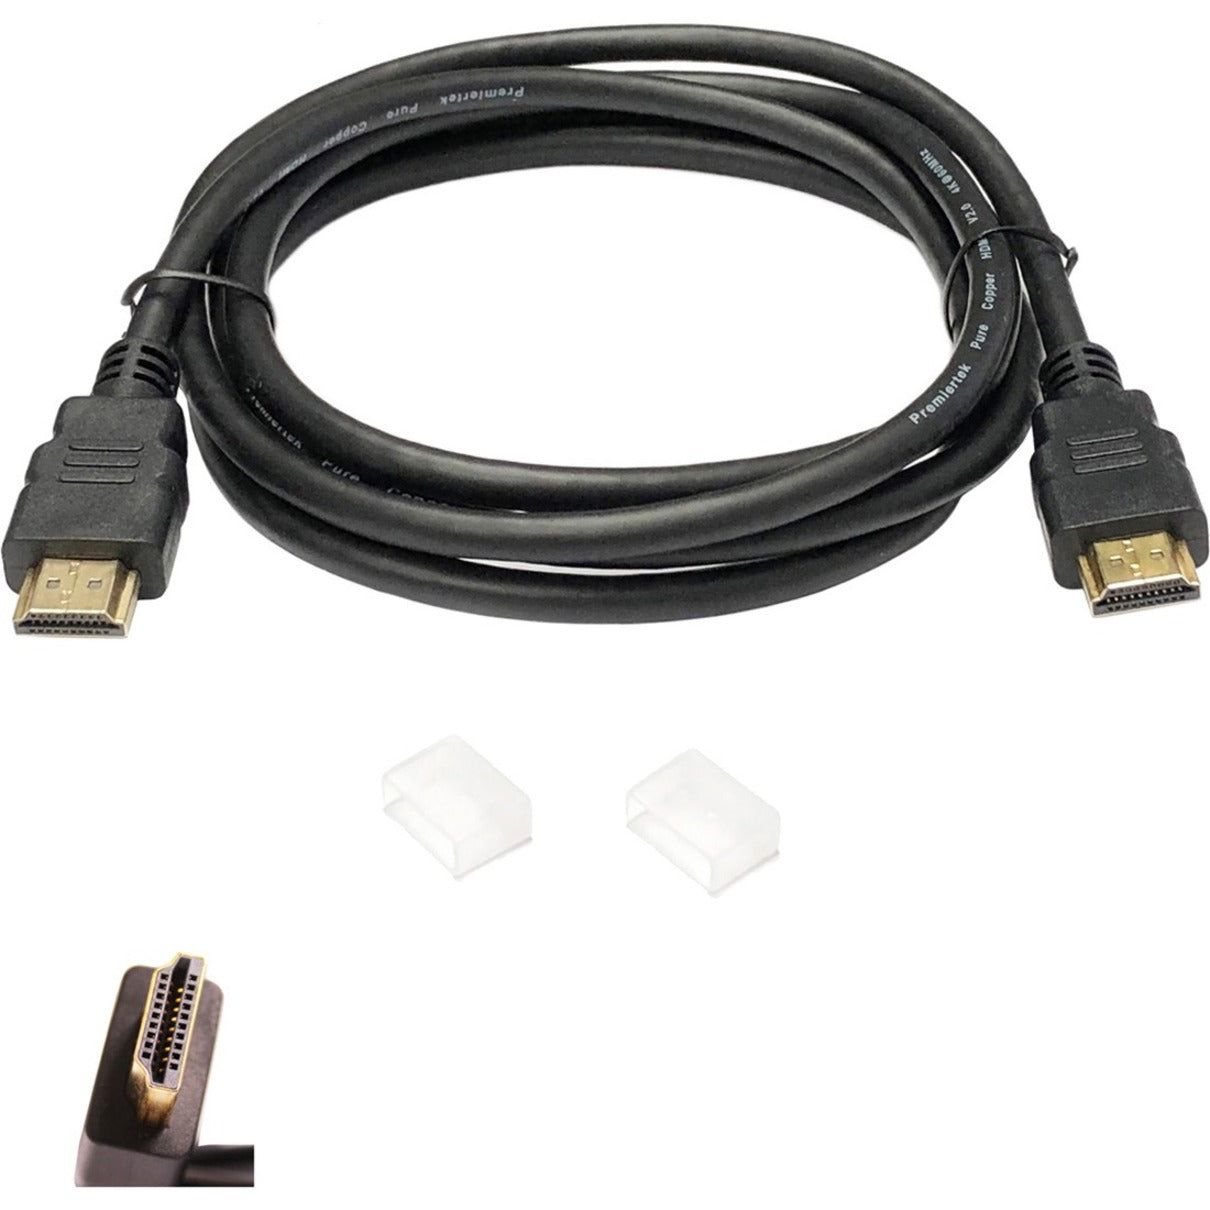 Premiertek HDMI Cable 10ft Main image